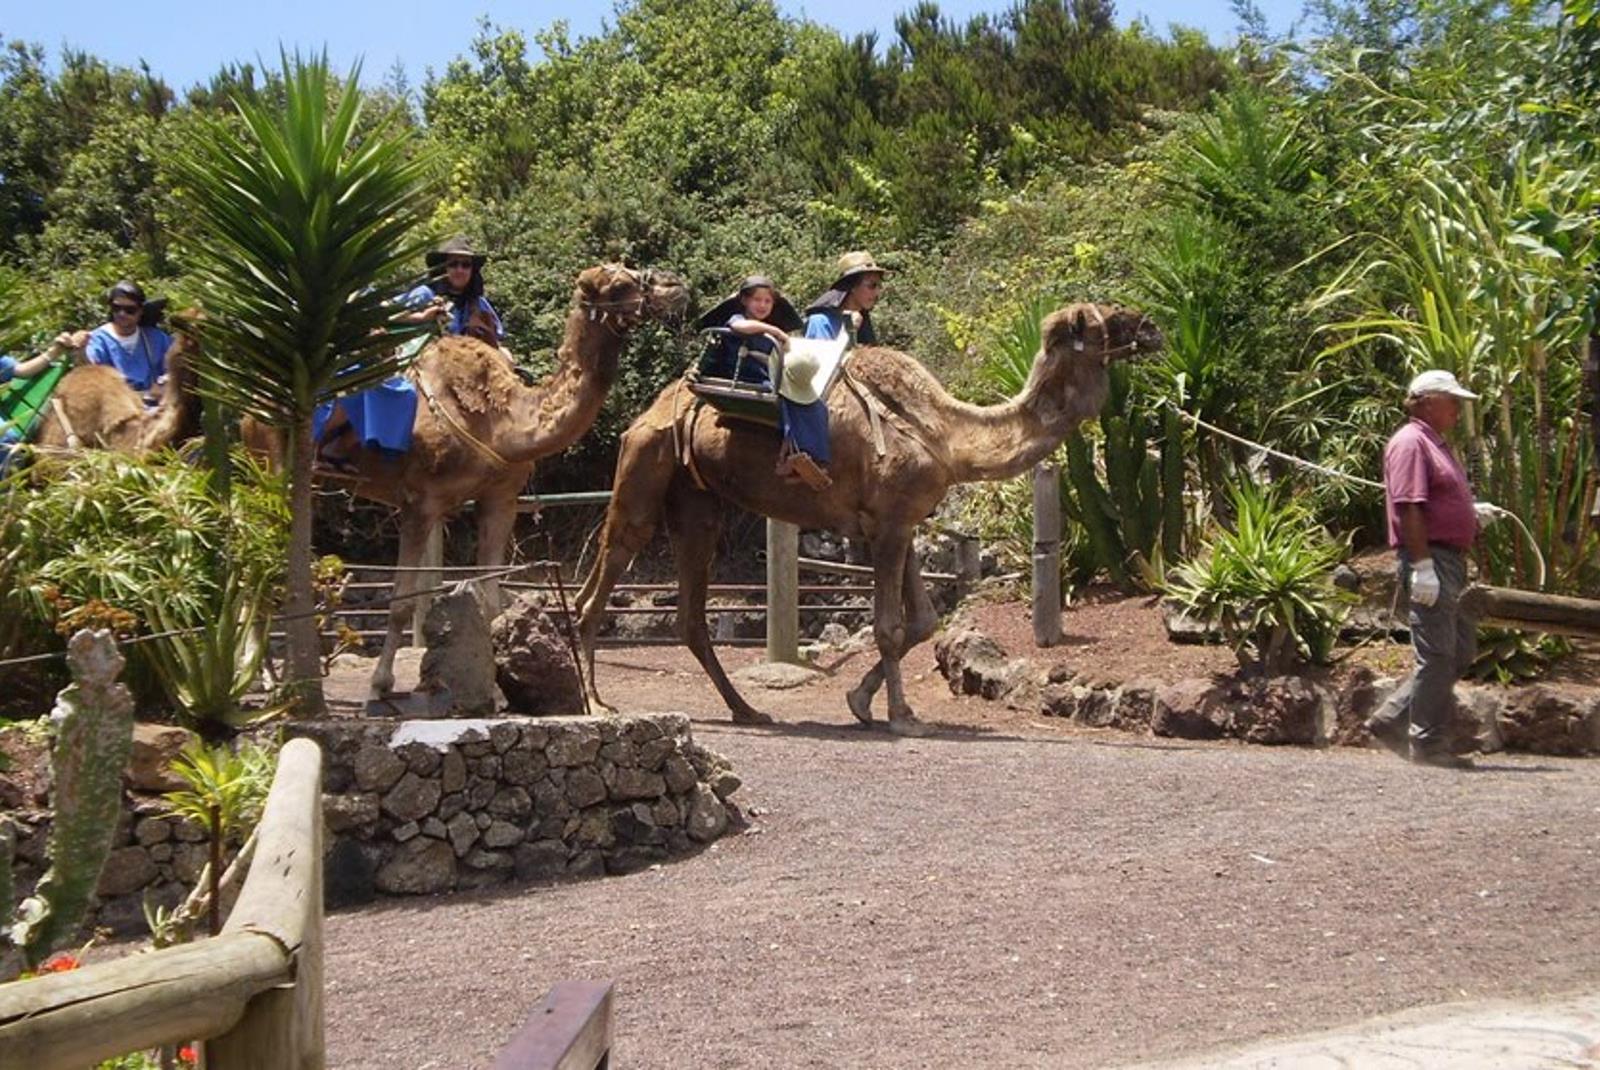 Camel-Riding-Tour-at-El-Tanque-5